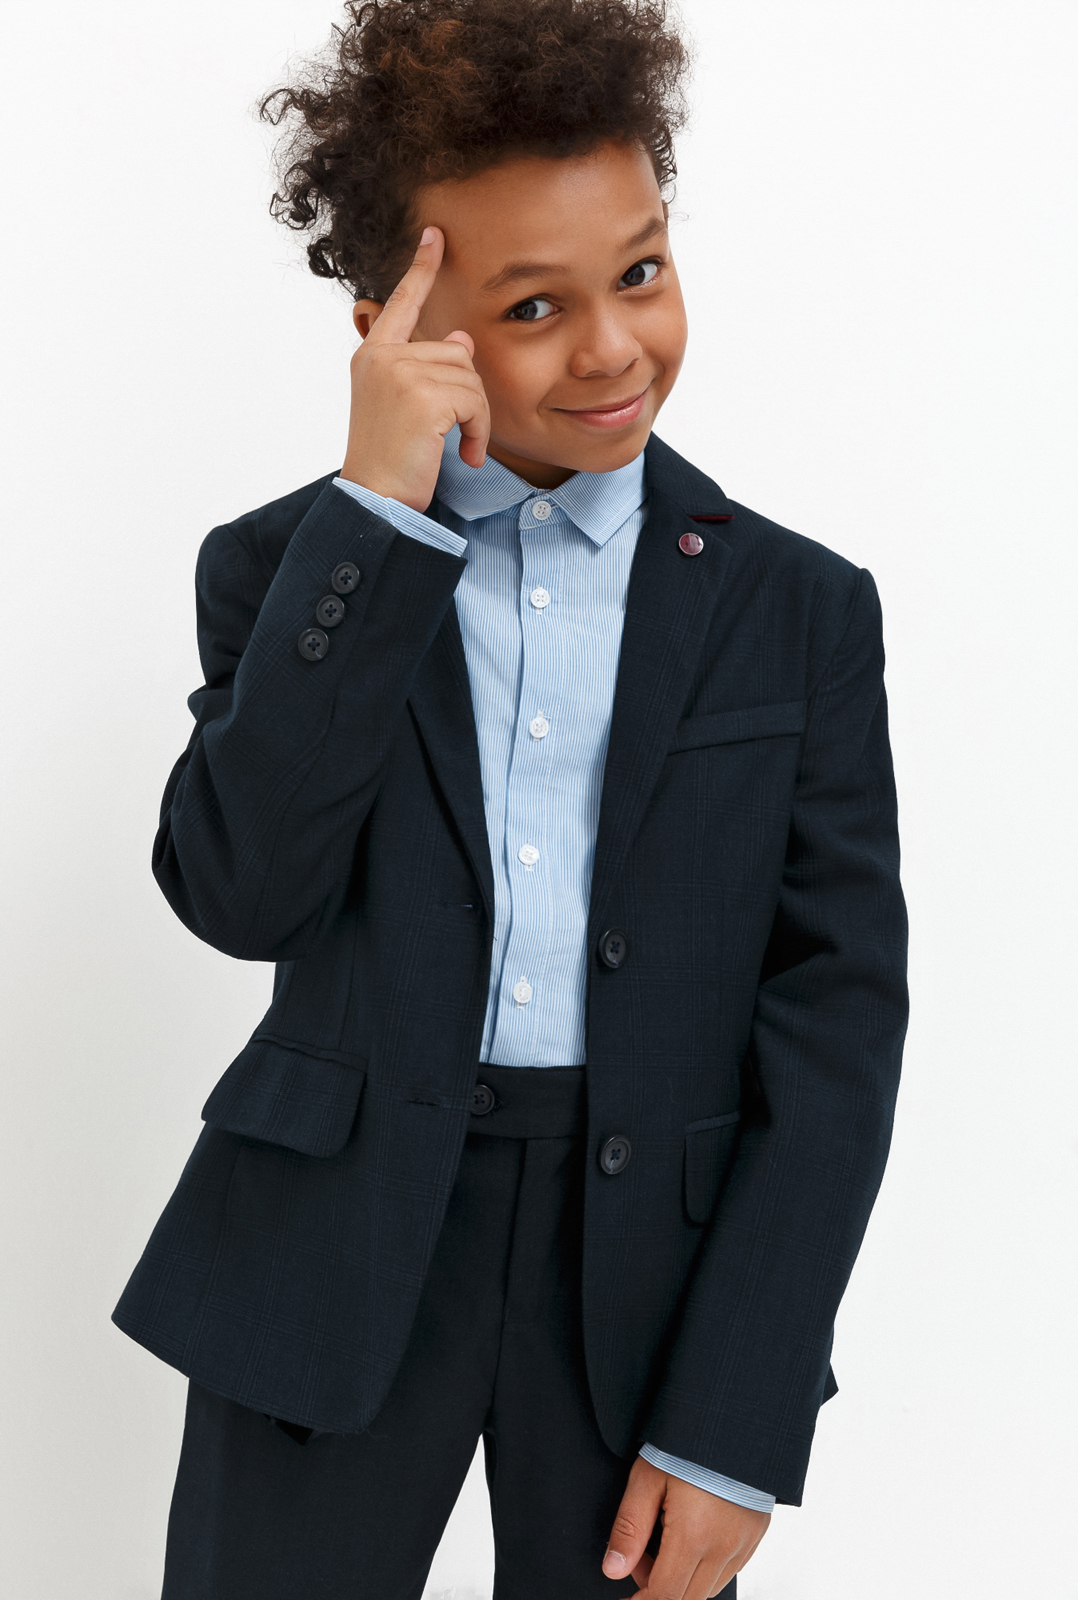 Пиджак для мальчика Acoola Chandler, цвет: темно-голубой. 20140130030_600. Размер 128